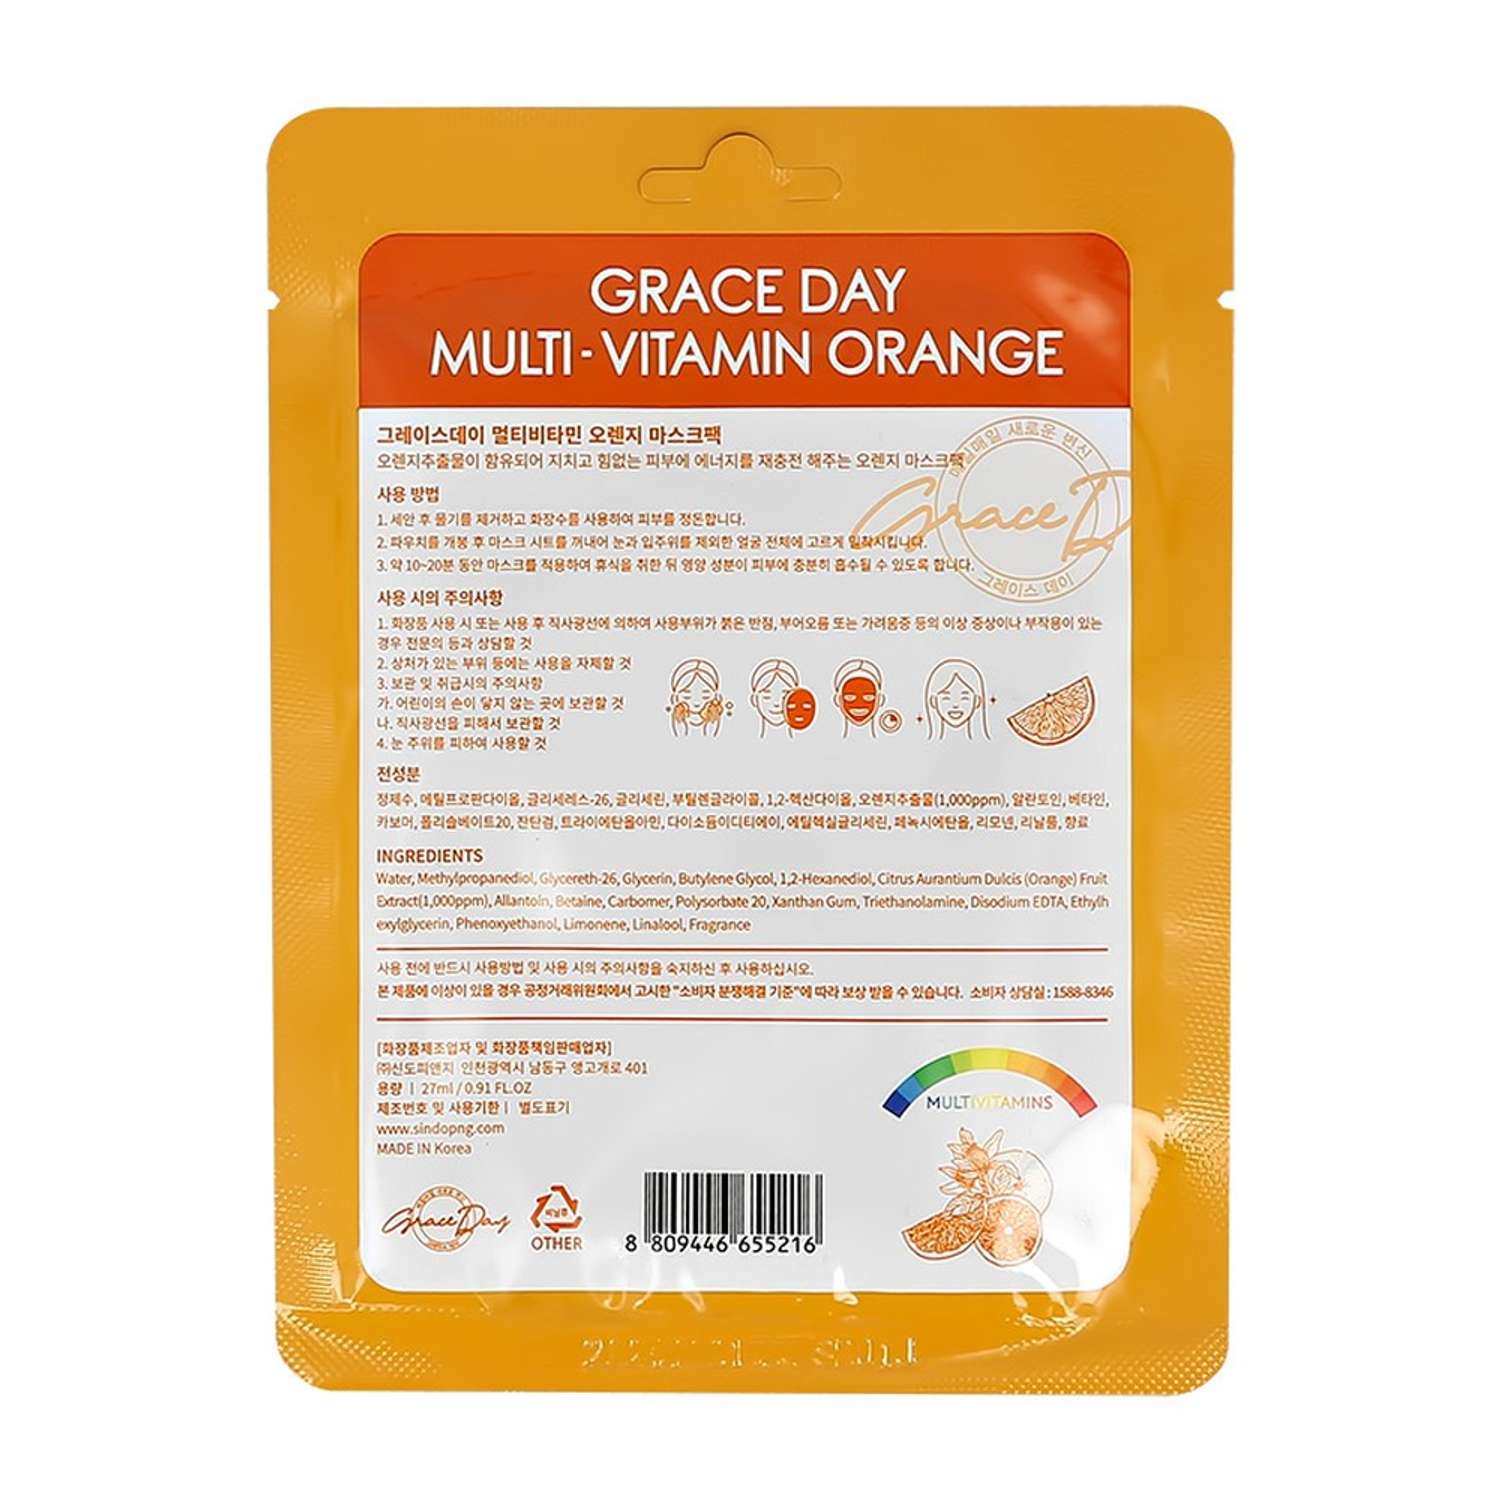 Маска тканевая Grace day Multi-vitamin с экстрактом апельсина для сияния кожи 27 мл - фото 5